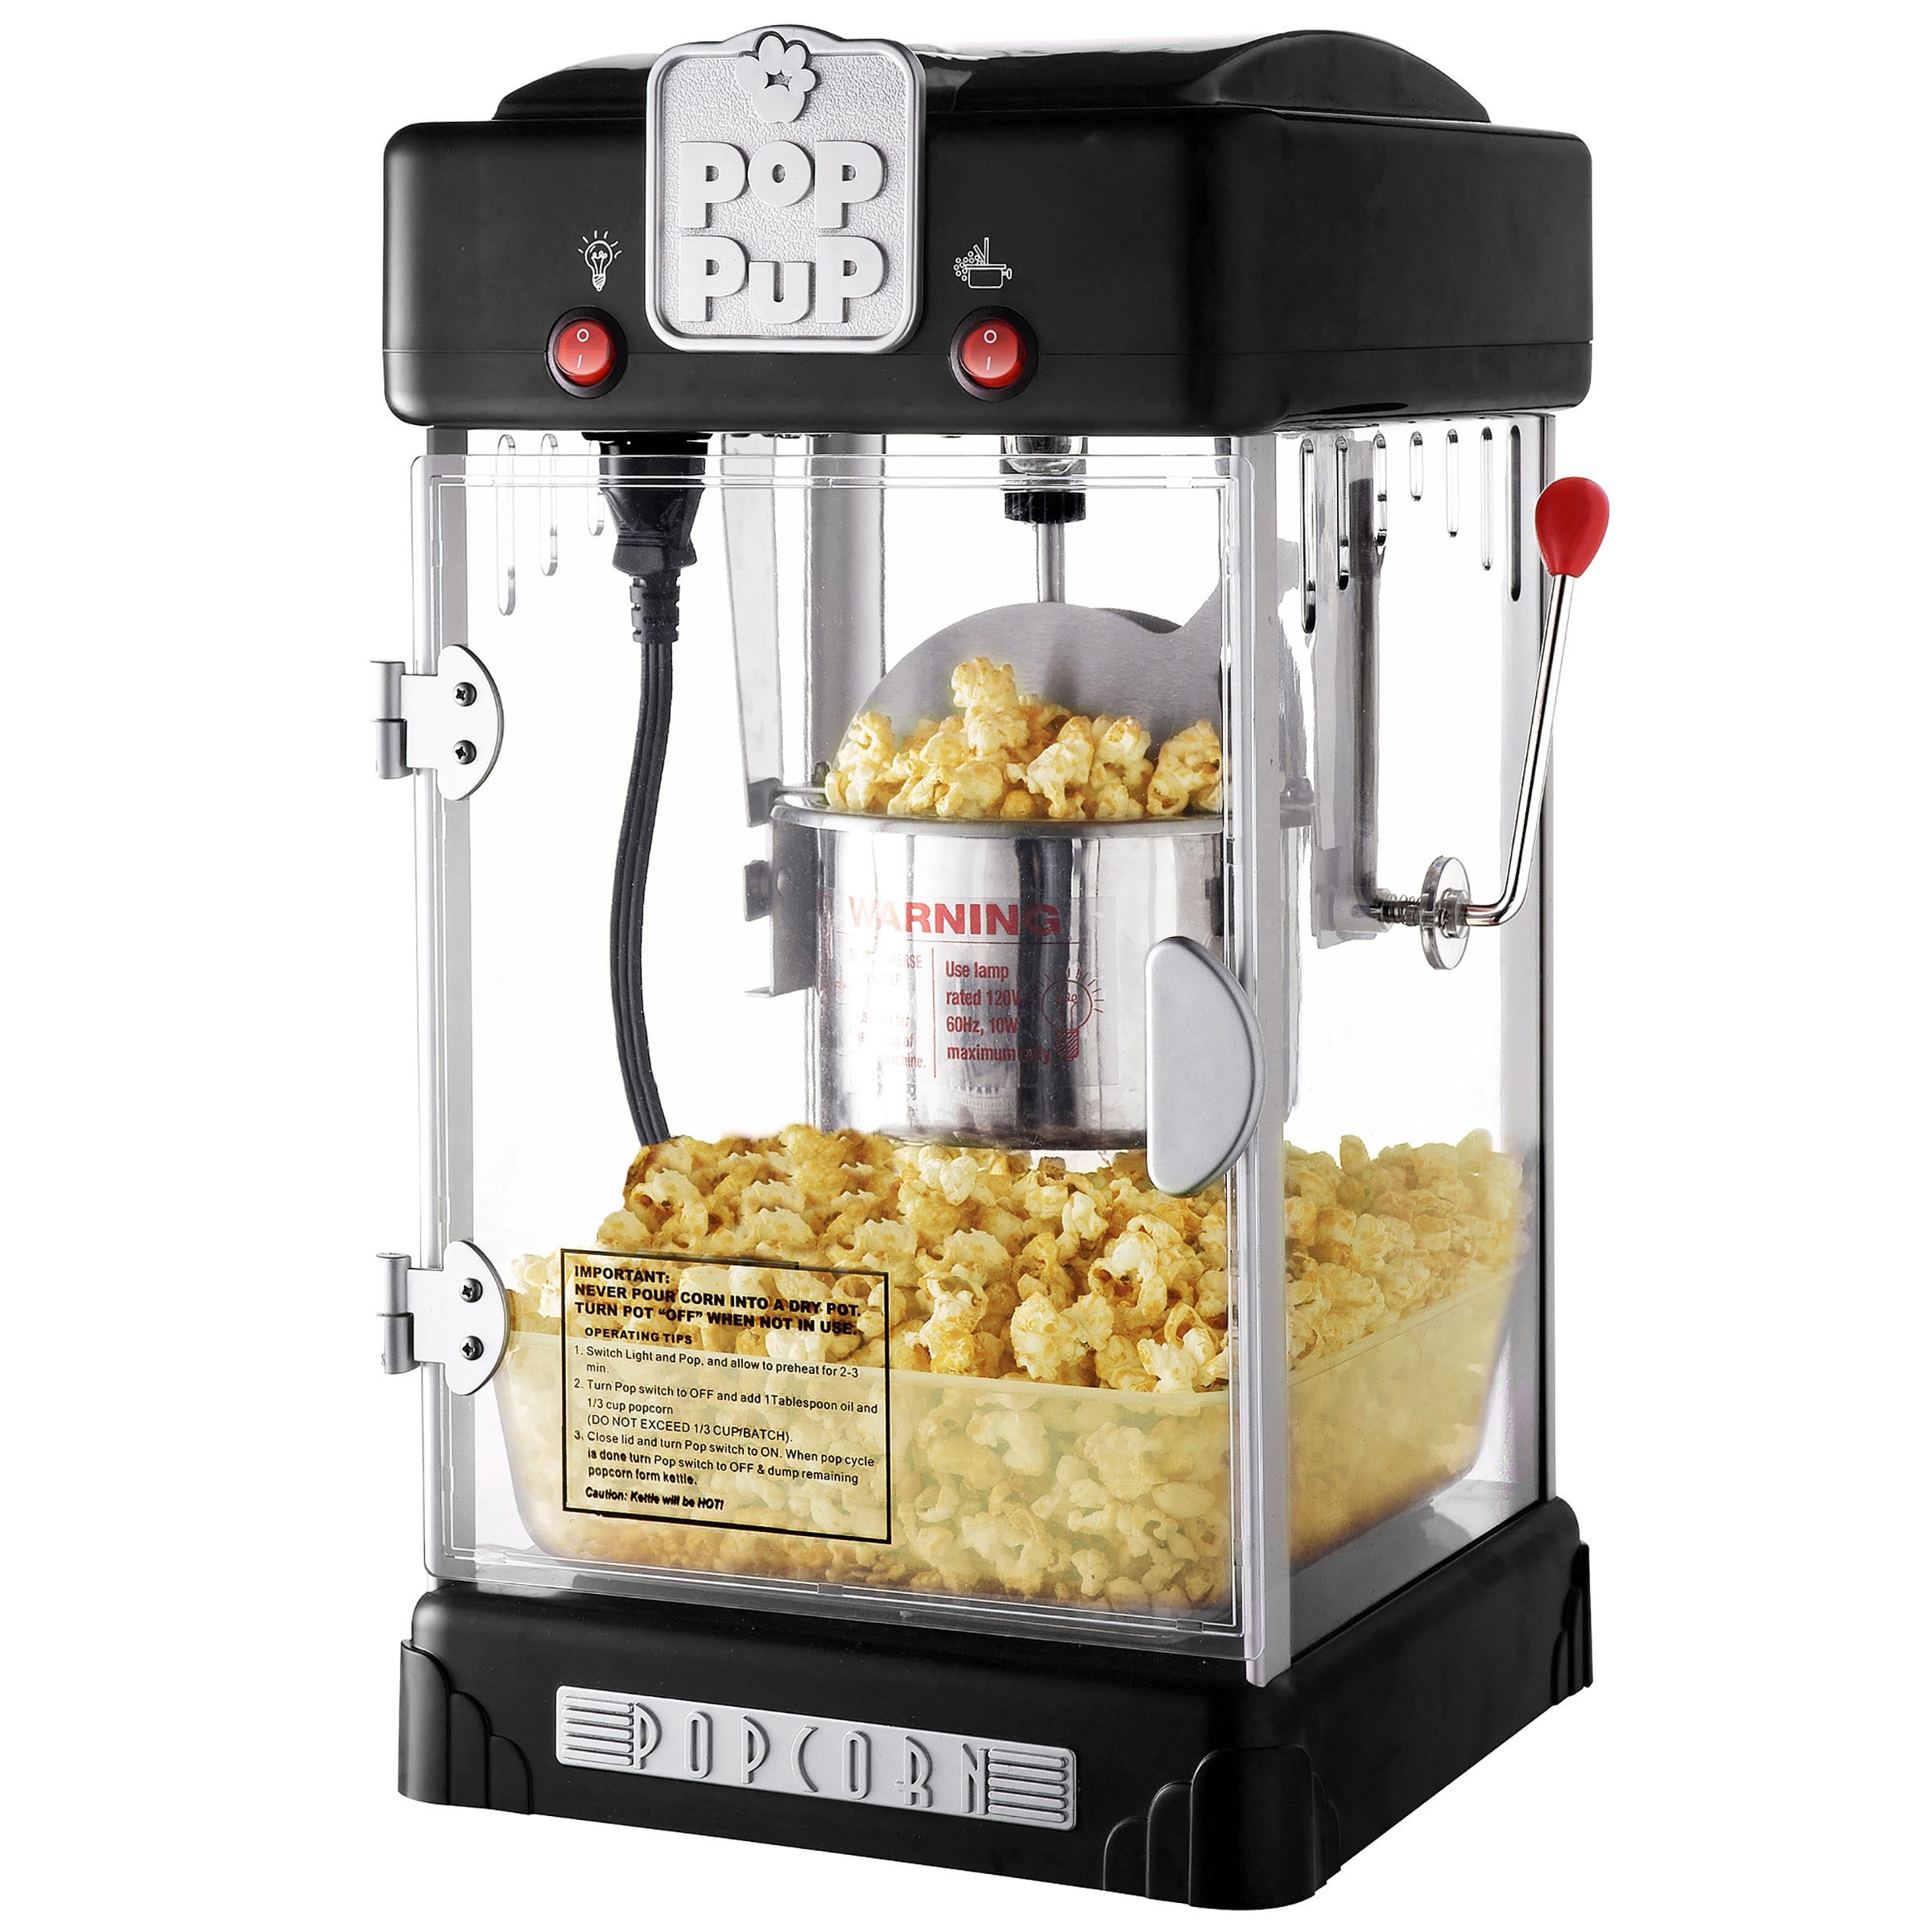 StovePop Stainless Steel Popcorn Popper – VKP Brands